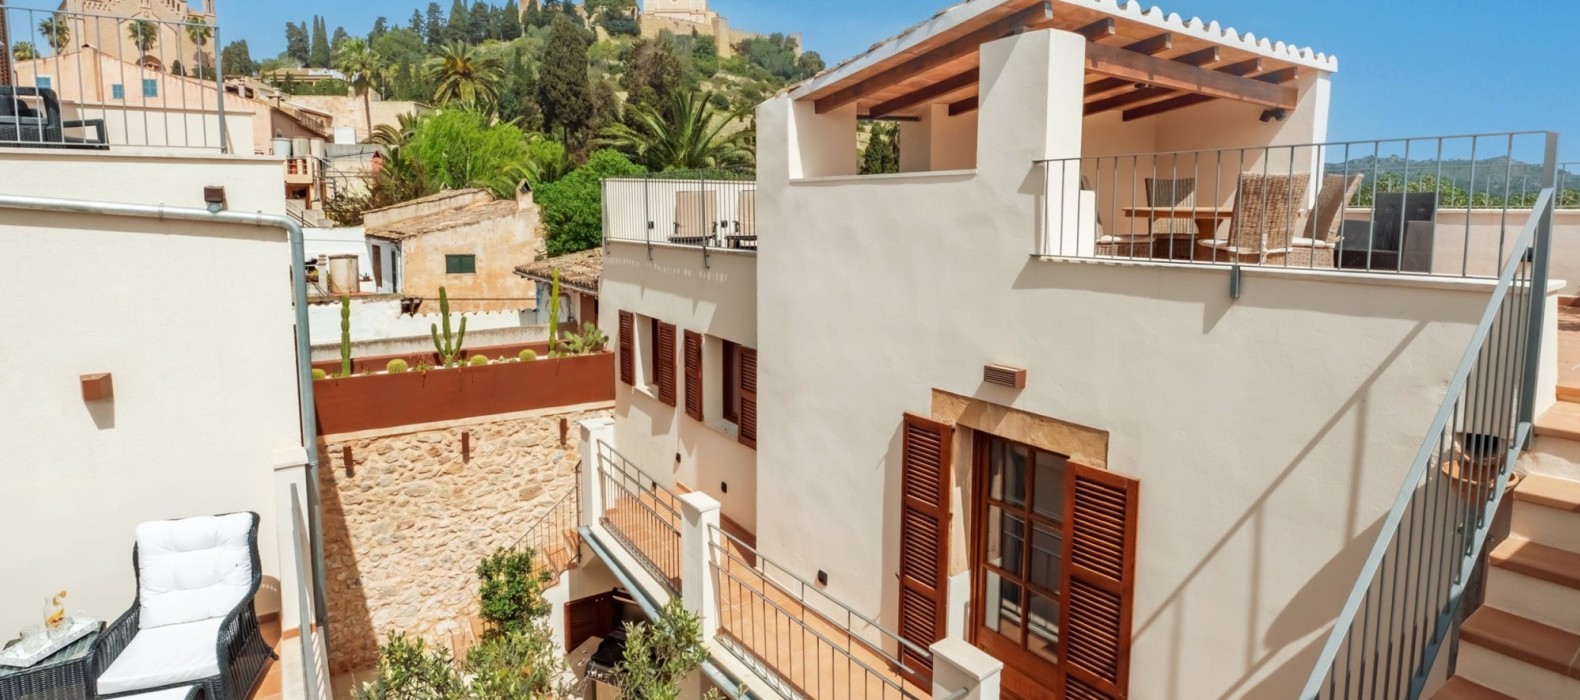 Exterior view of Casa Floris in Mallorca